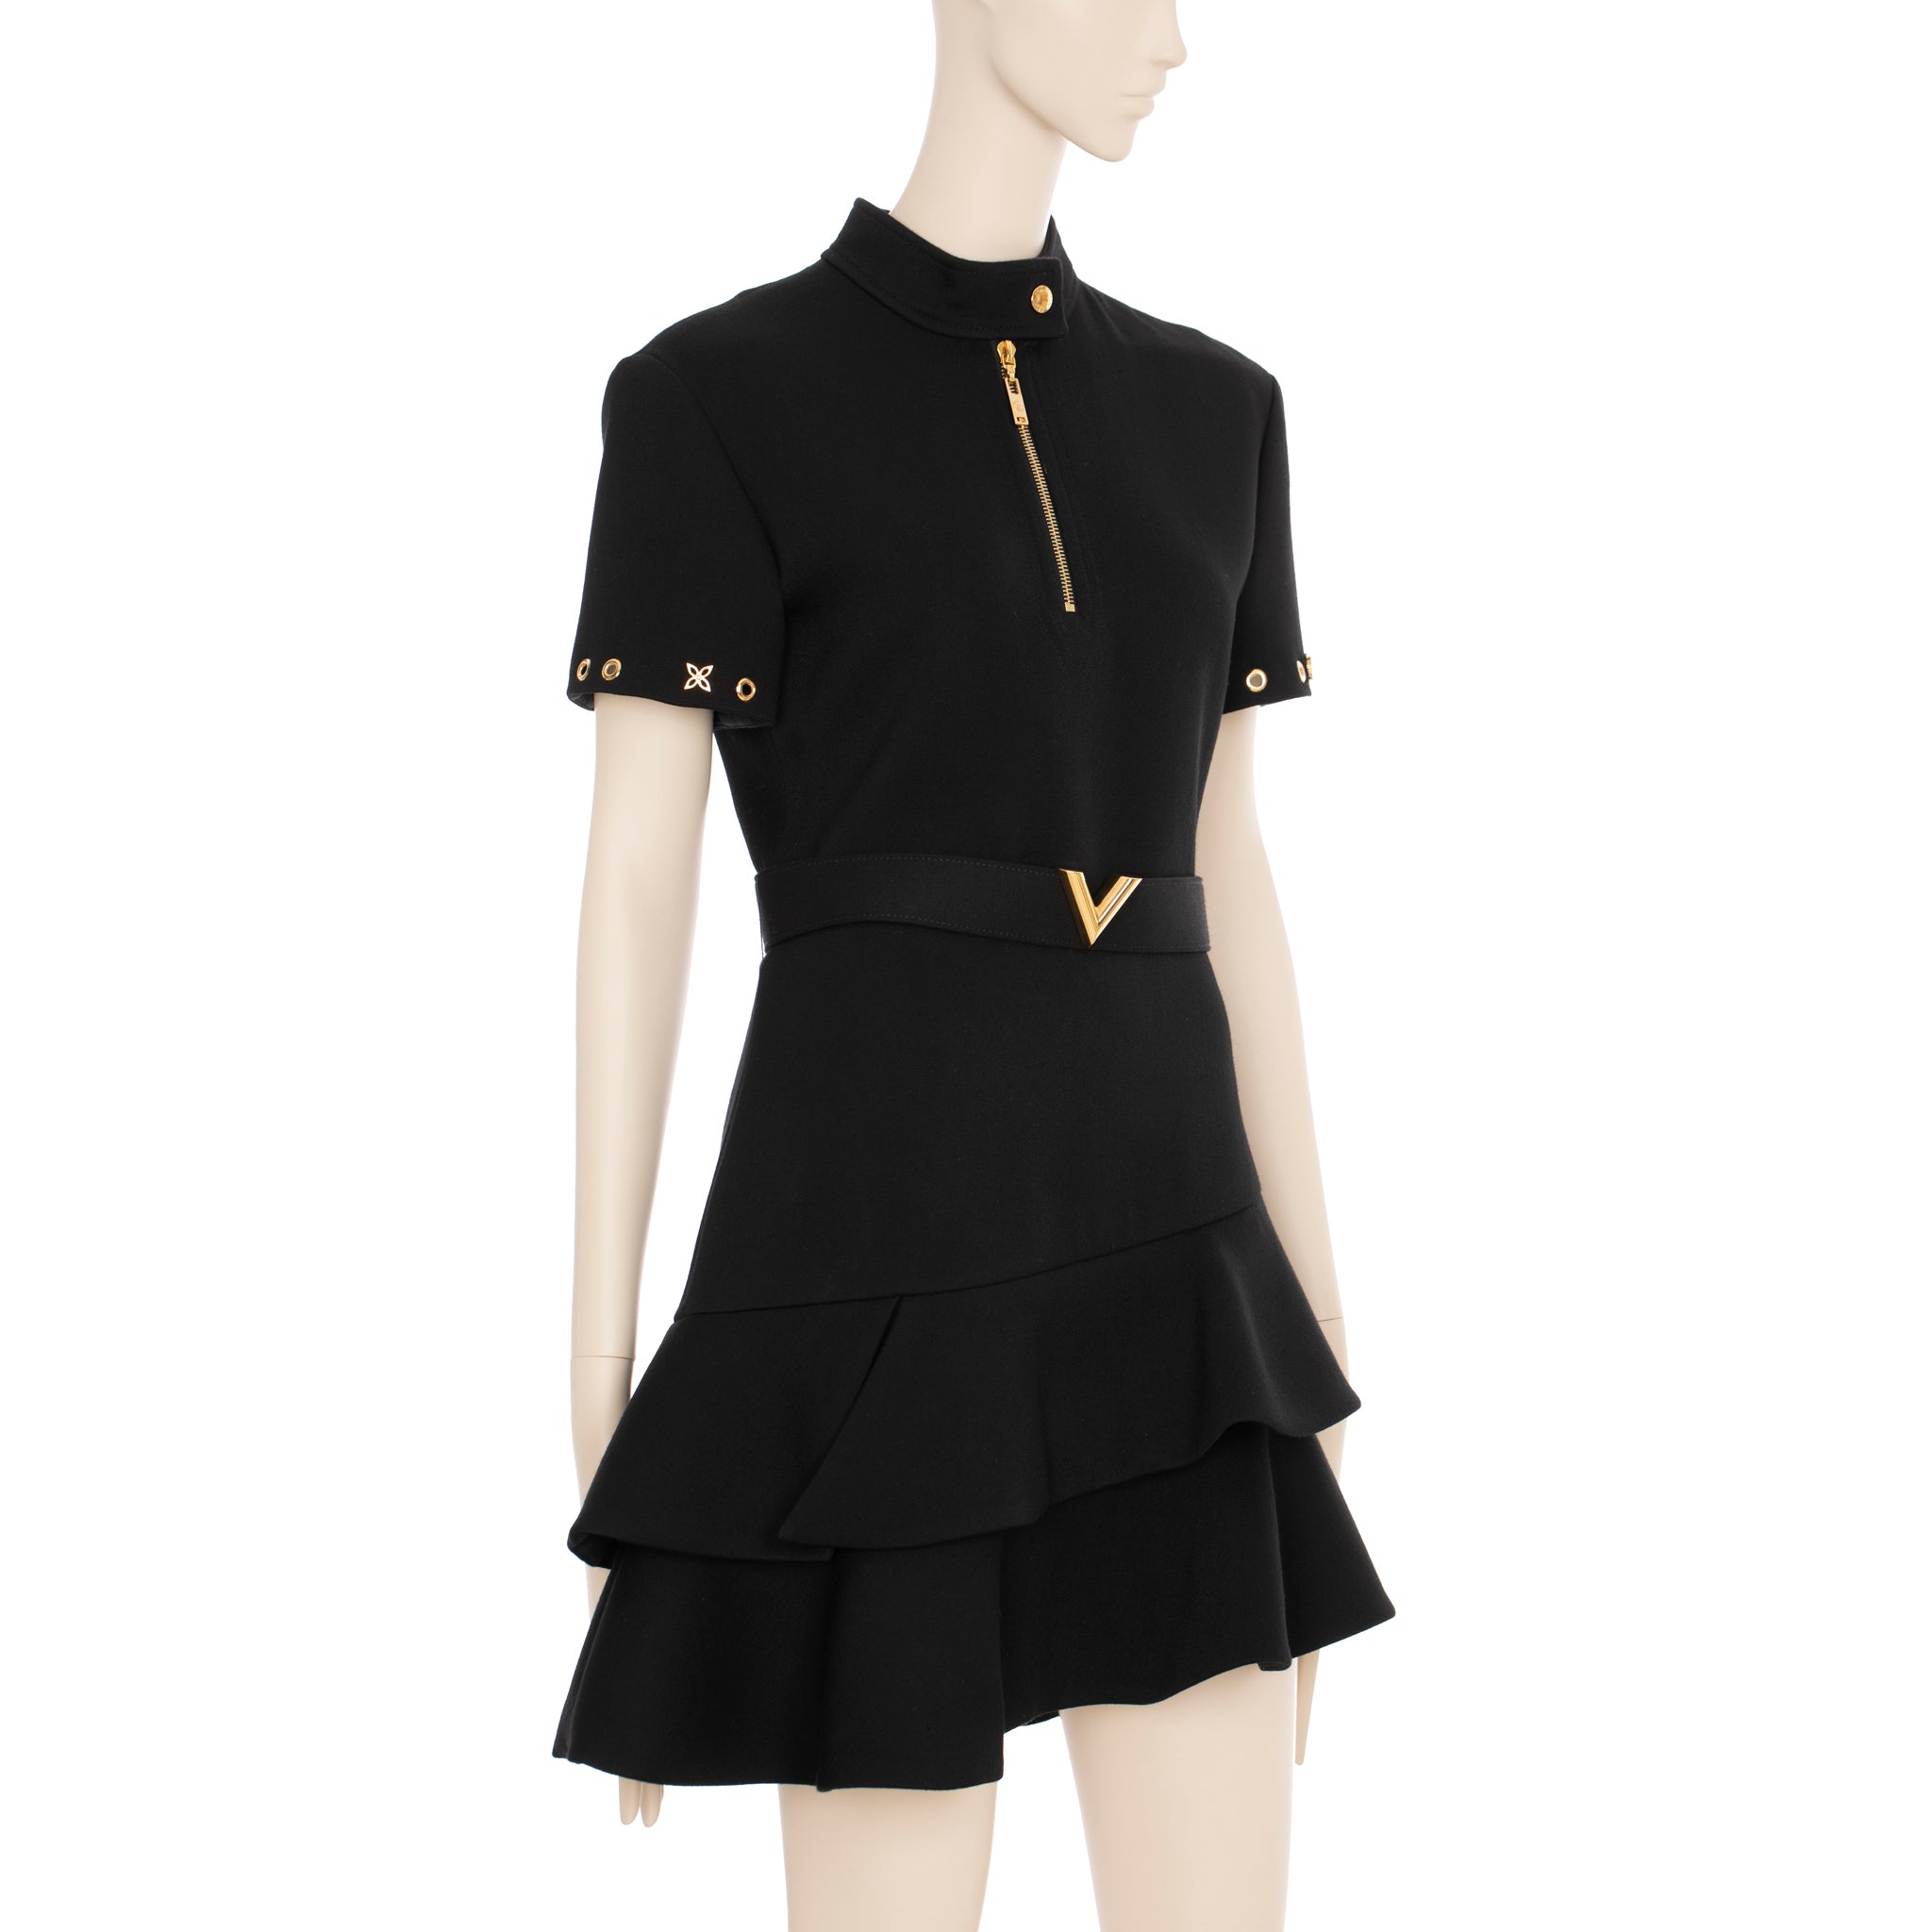 Louis Vuitton Black Dress With Peplum Skirt 36 FR